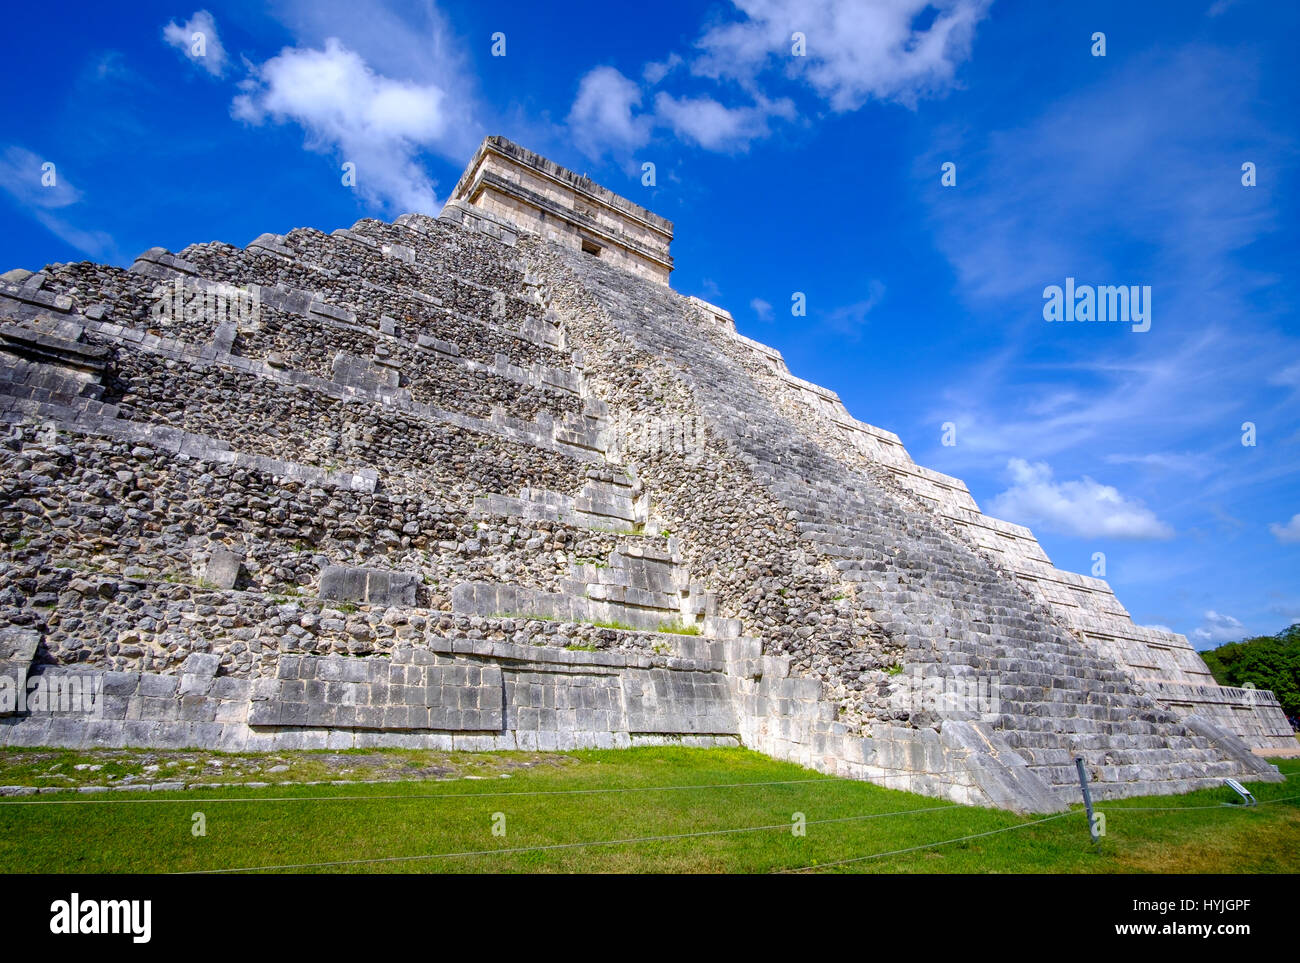 Scenic view of Mayan pyramid the Castillo in Chichen Itza, Mexico Stock Photo